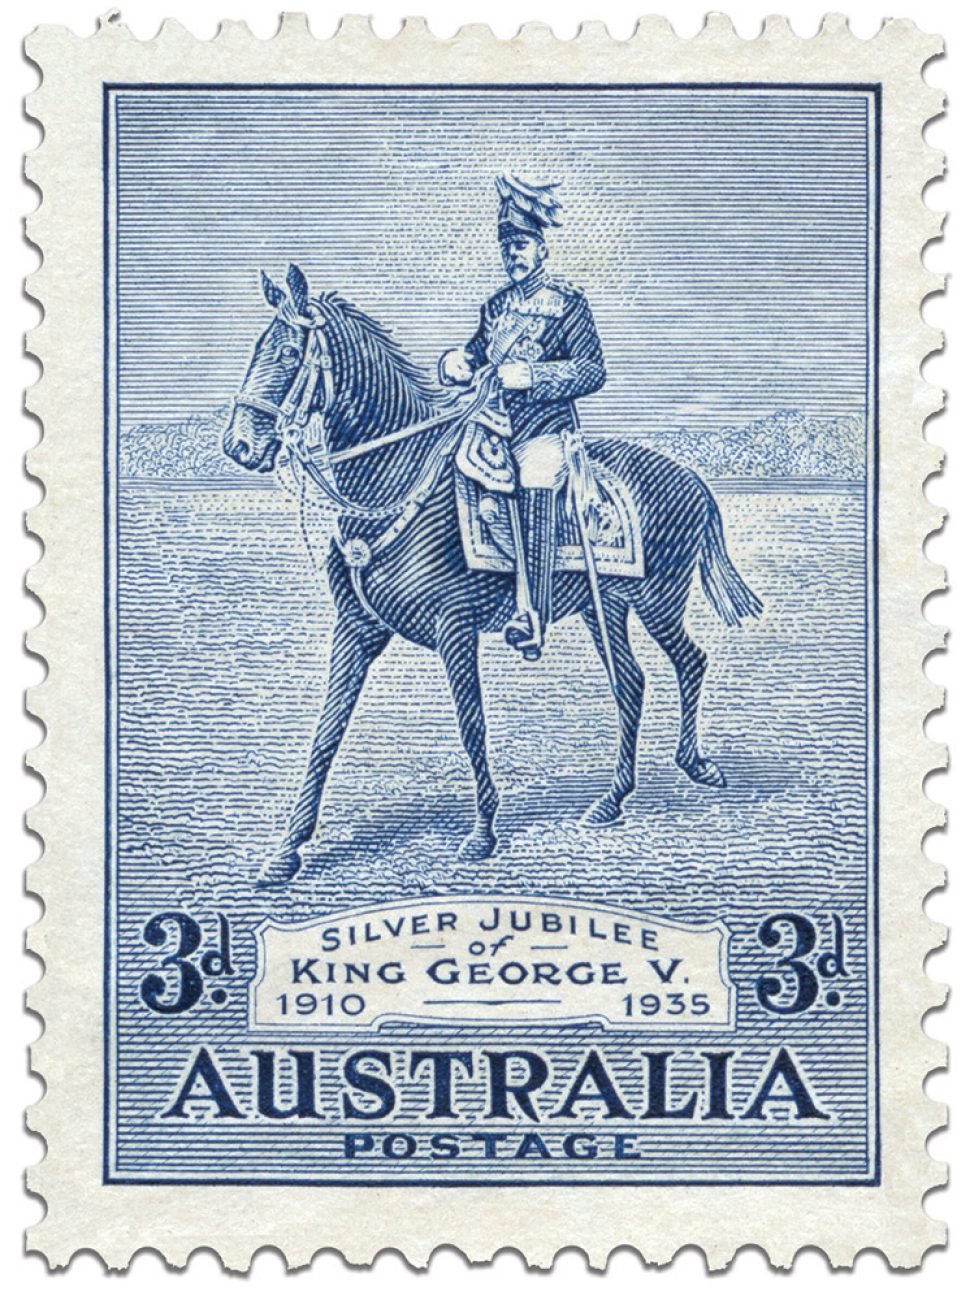 3d stamp celebrating King George V Silver Jubillee